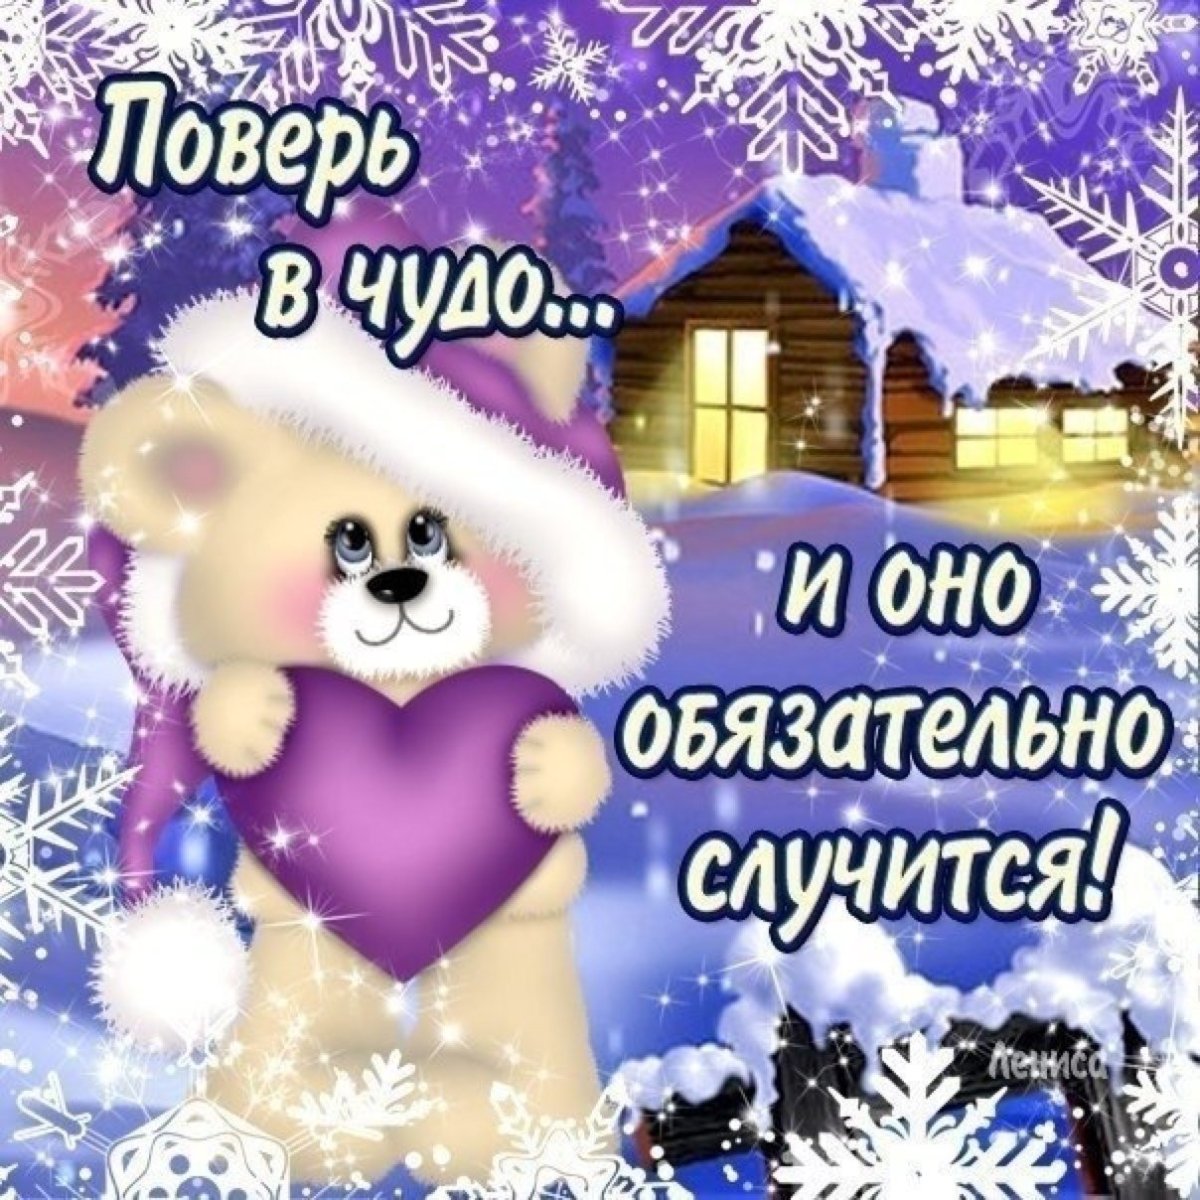 Хорошего нового зимнего дня картинки. Зимние открытки с пожеланиями. Желаю удачи и хорошего настроения зимой. Здоровья и хорошего настроения в новом году. Доброго здоровья и хорошего зимнего настроения.